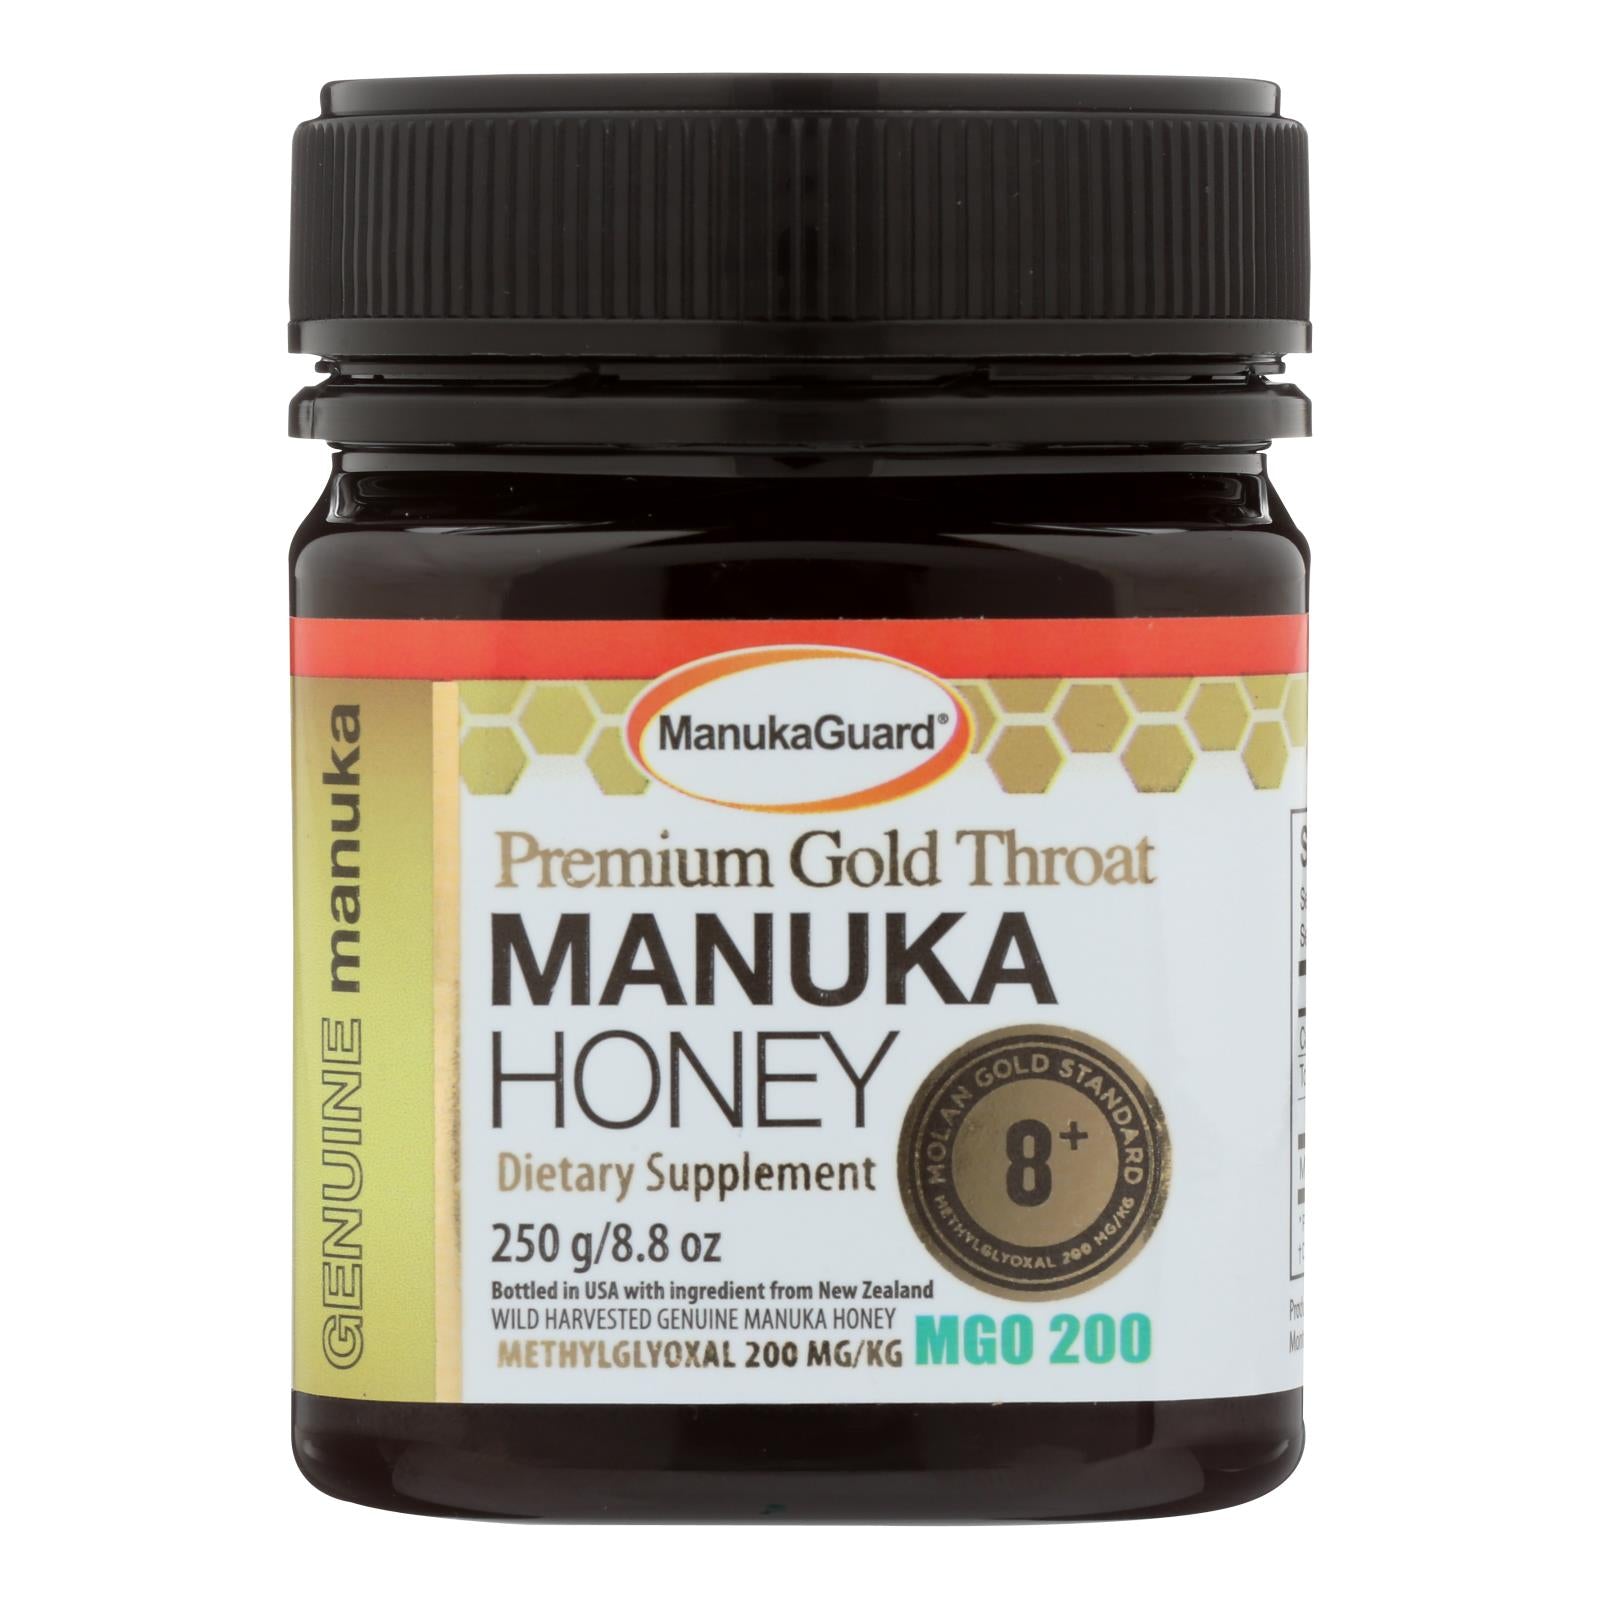 Manukaguard - Manuka Honey Prem Gold 8+ - 8.8 Oz